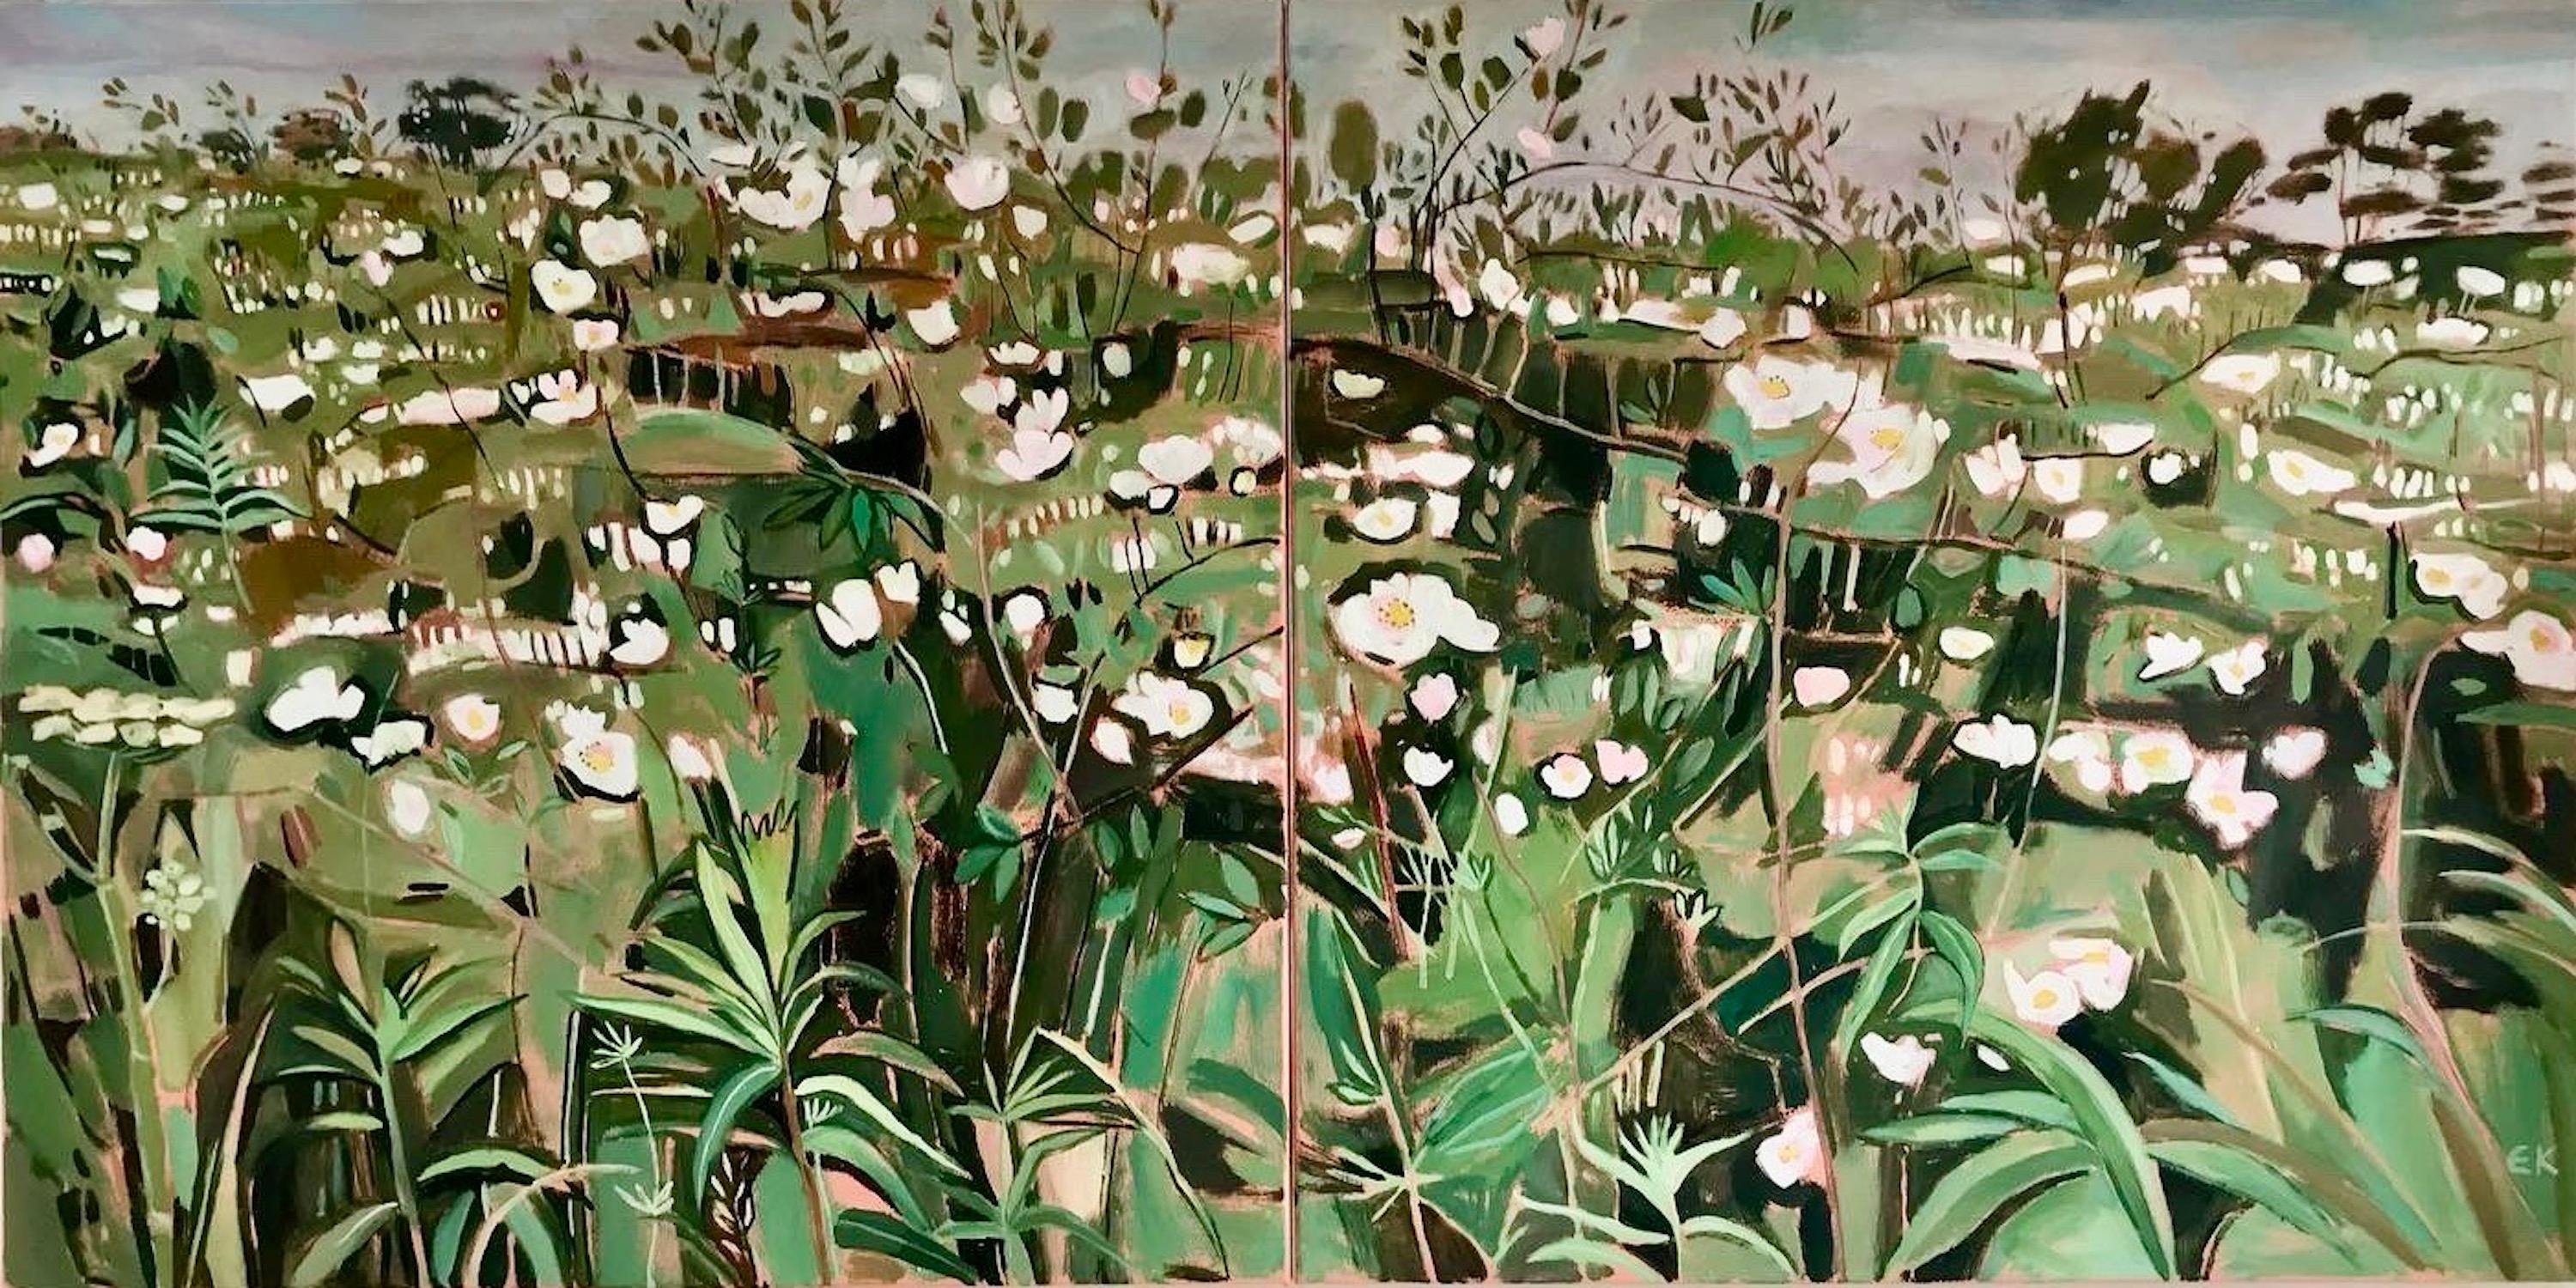 Elaine Kazimierczuk  Landscape Painting - Summer hedgerows with Dog & Roses, Elaine Kazimierczuk, Original floral art